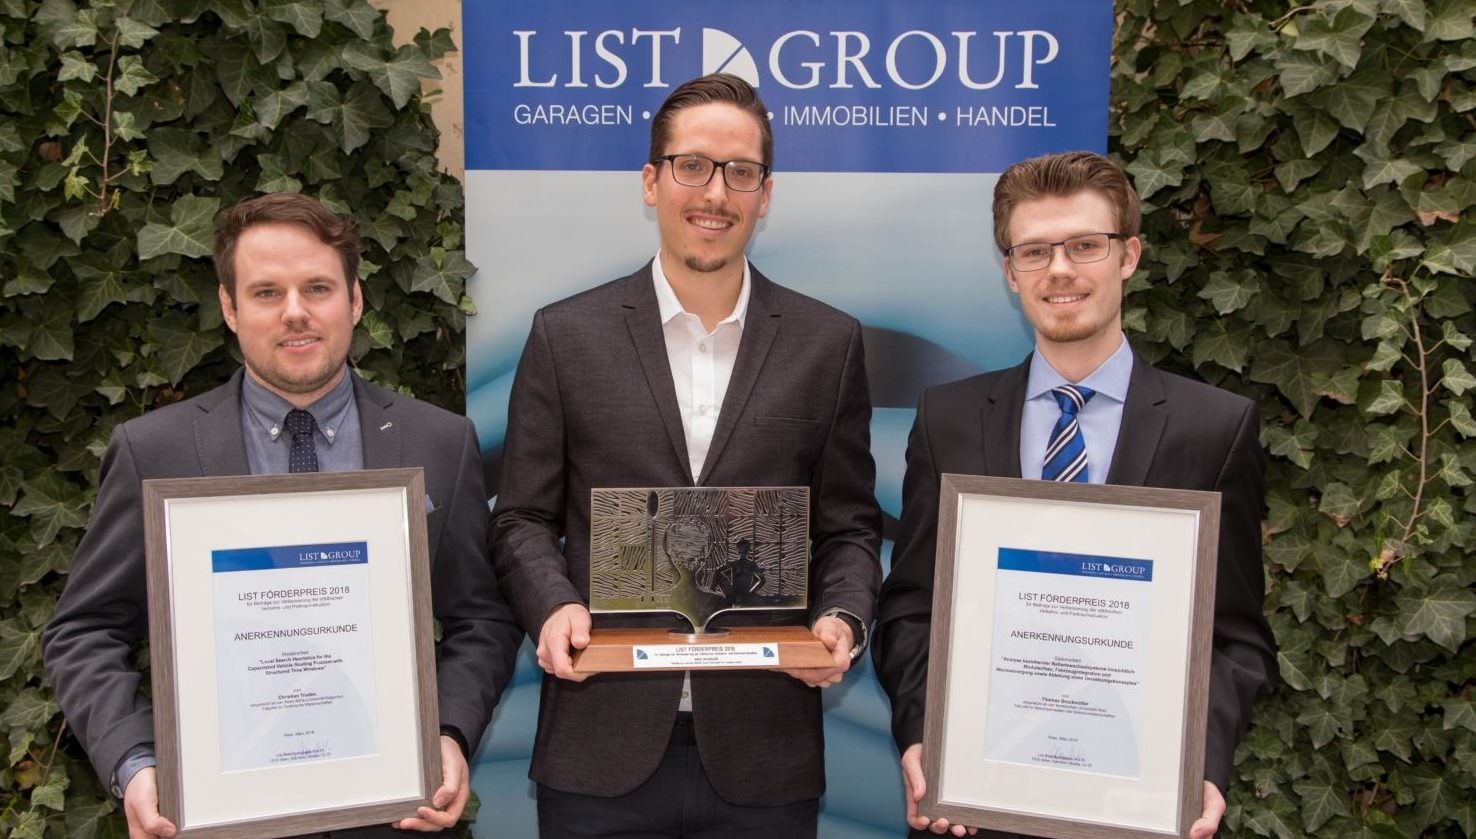 von links nach rechts:
Die Jury des List Förderpreises hat nun drei junge Wissenschafter für ihre Arbeiten ausgezeichnet, und zwar Christian Truden, Mike Wengler und Thomas Bruckmüller.